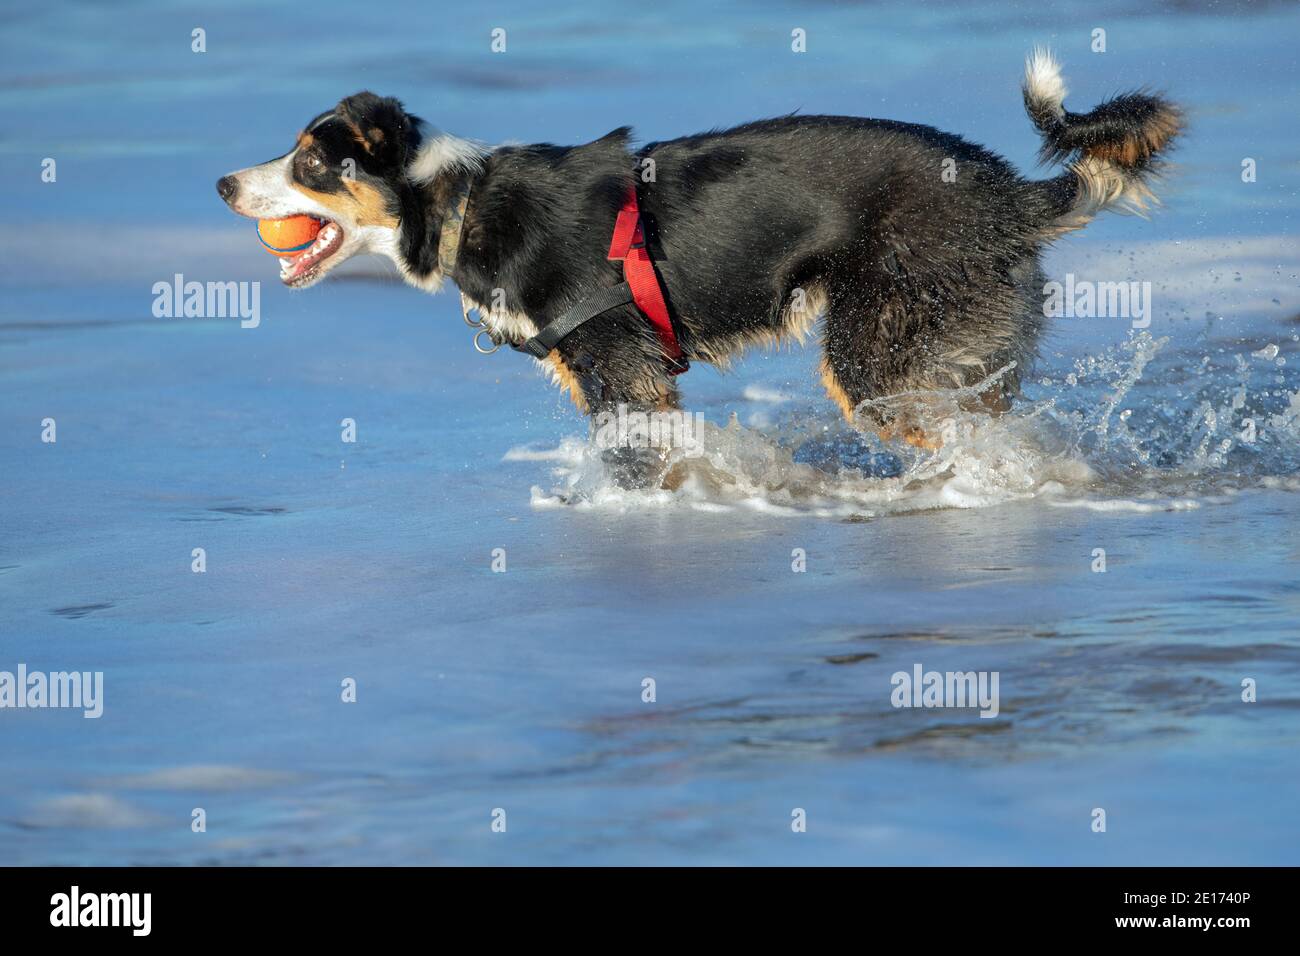 Dreifarbiger Border Collie Dog (Canis familiaris). Profil, Seitenansicht, Wattieren, Planschen im Meerwasser, holen, Ball im Mund tragen. Meerseite. Stockfoto